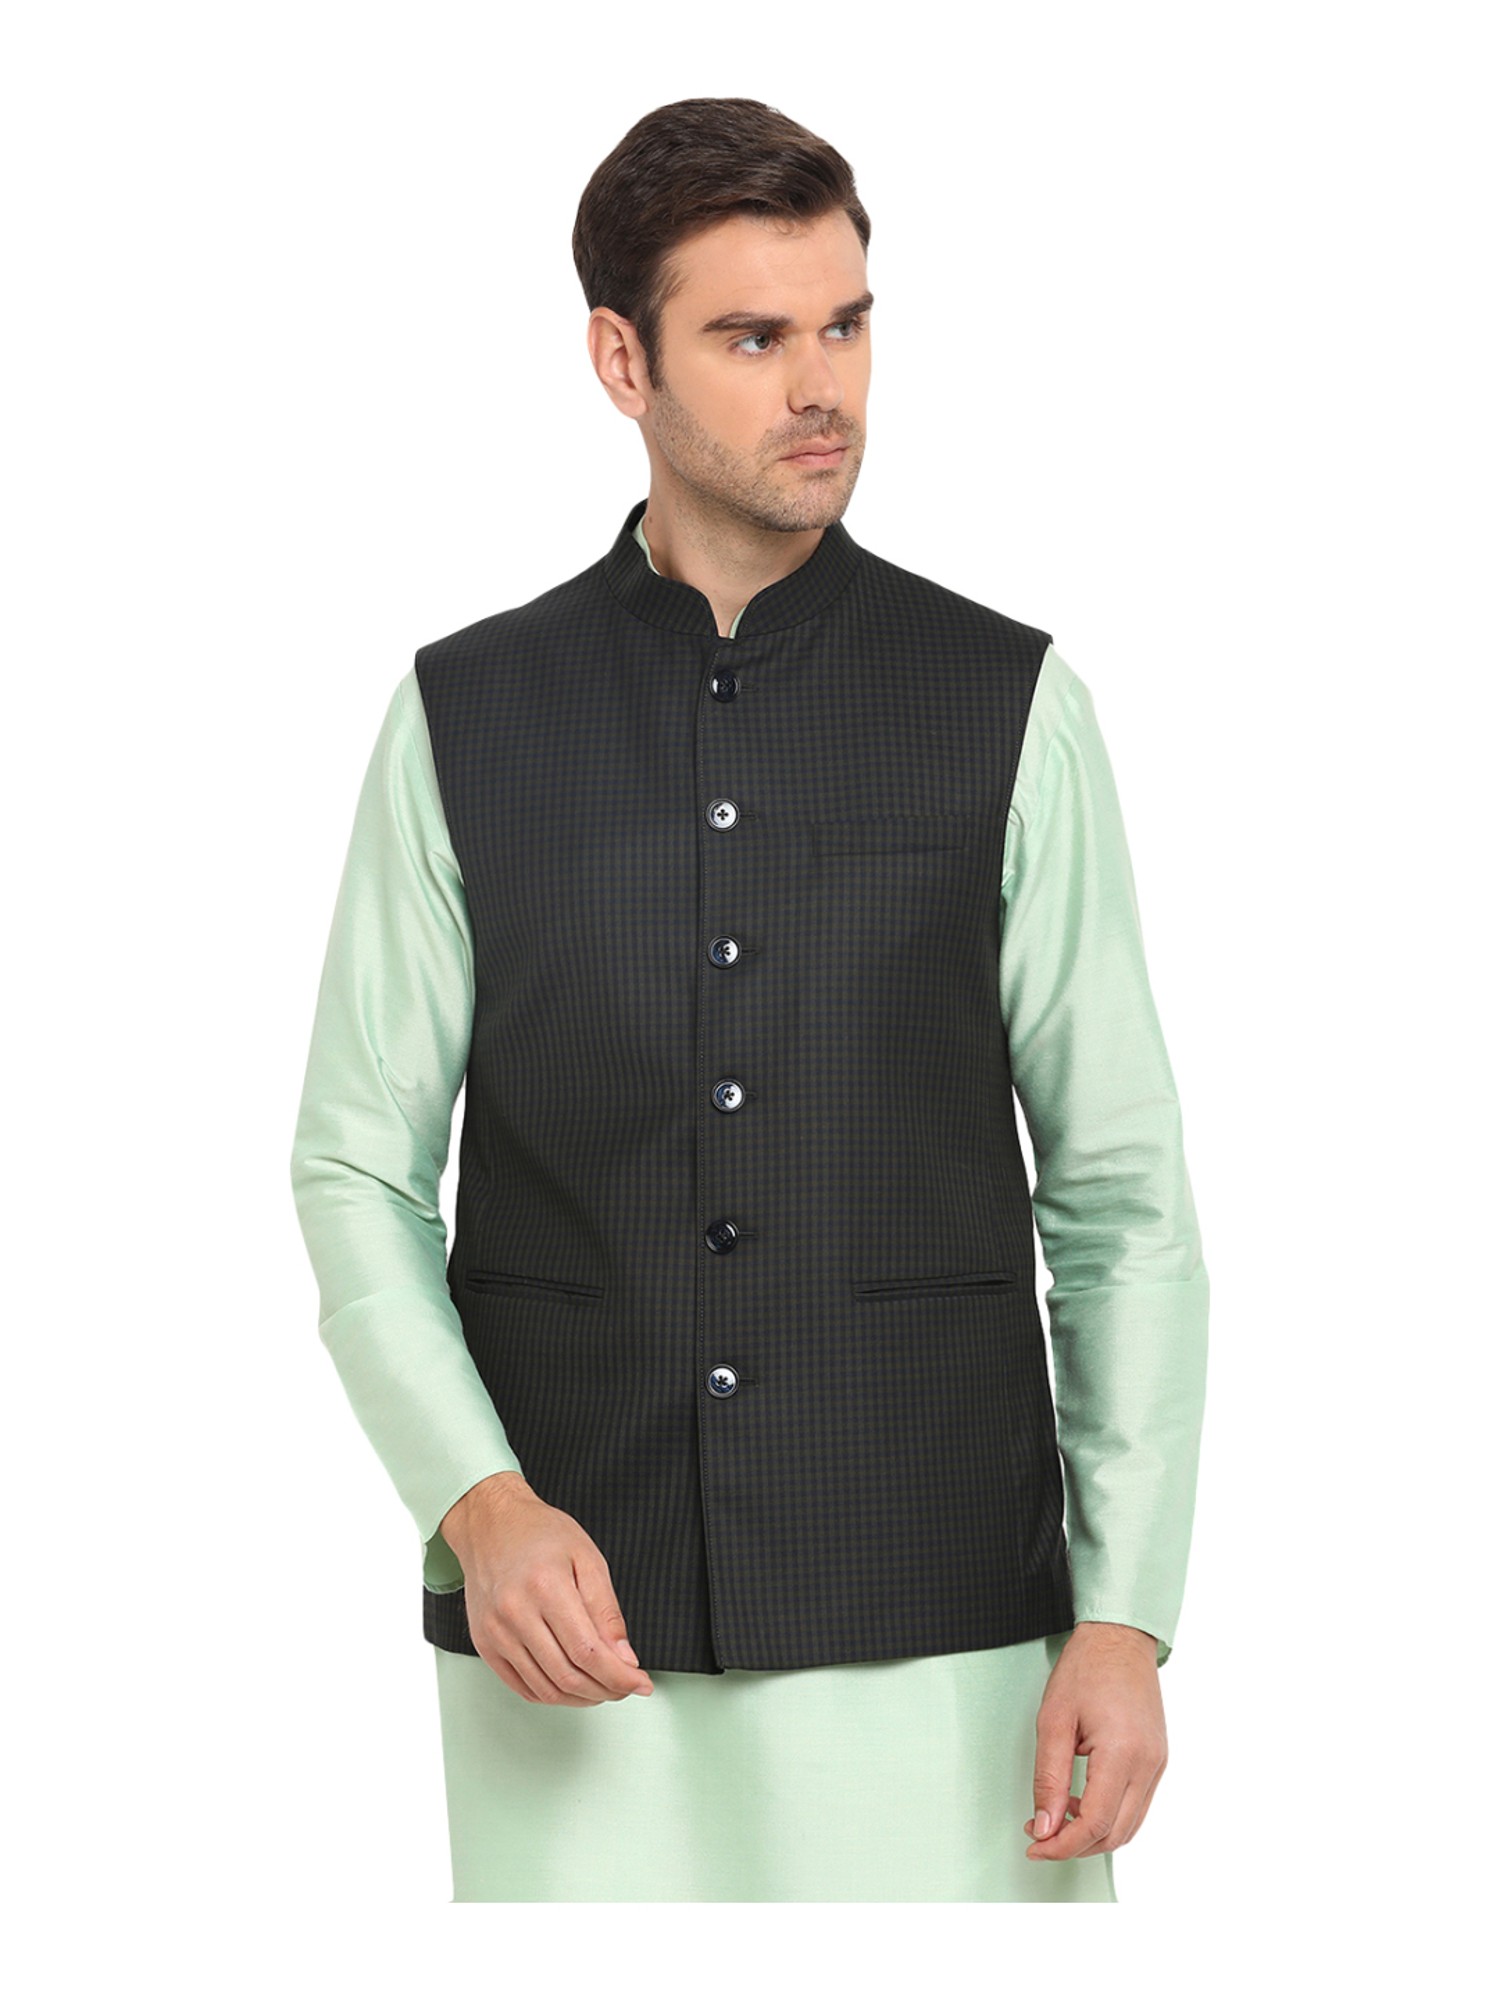 Buy Nehru Jacket for Men Online USA | Modi Jacket